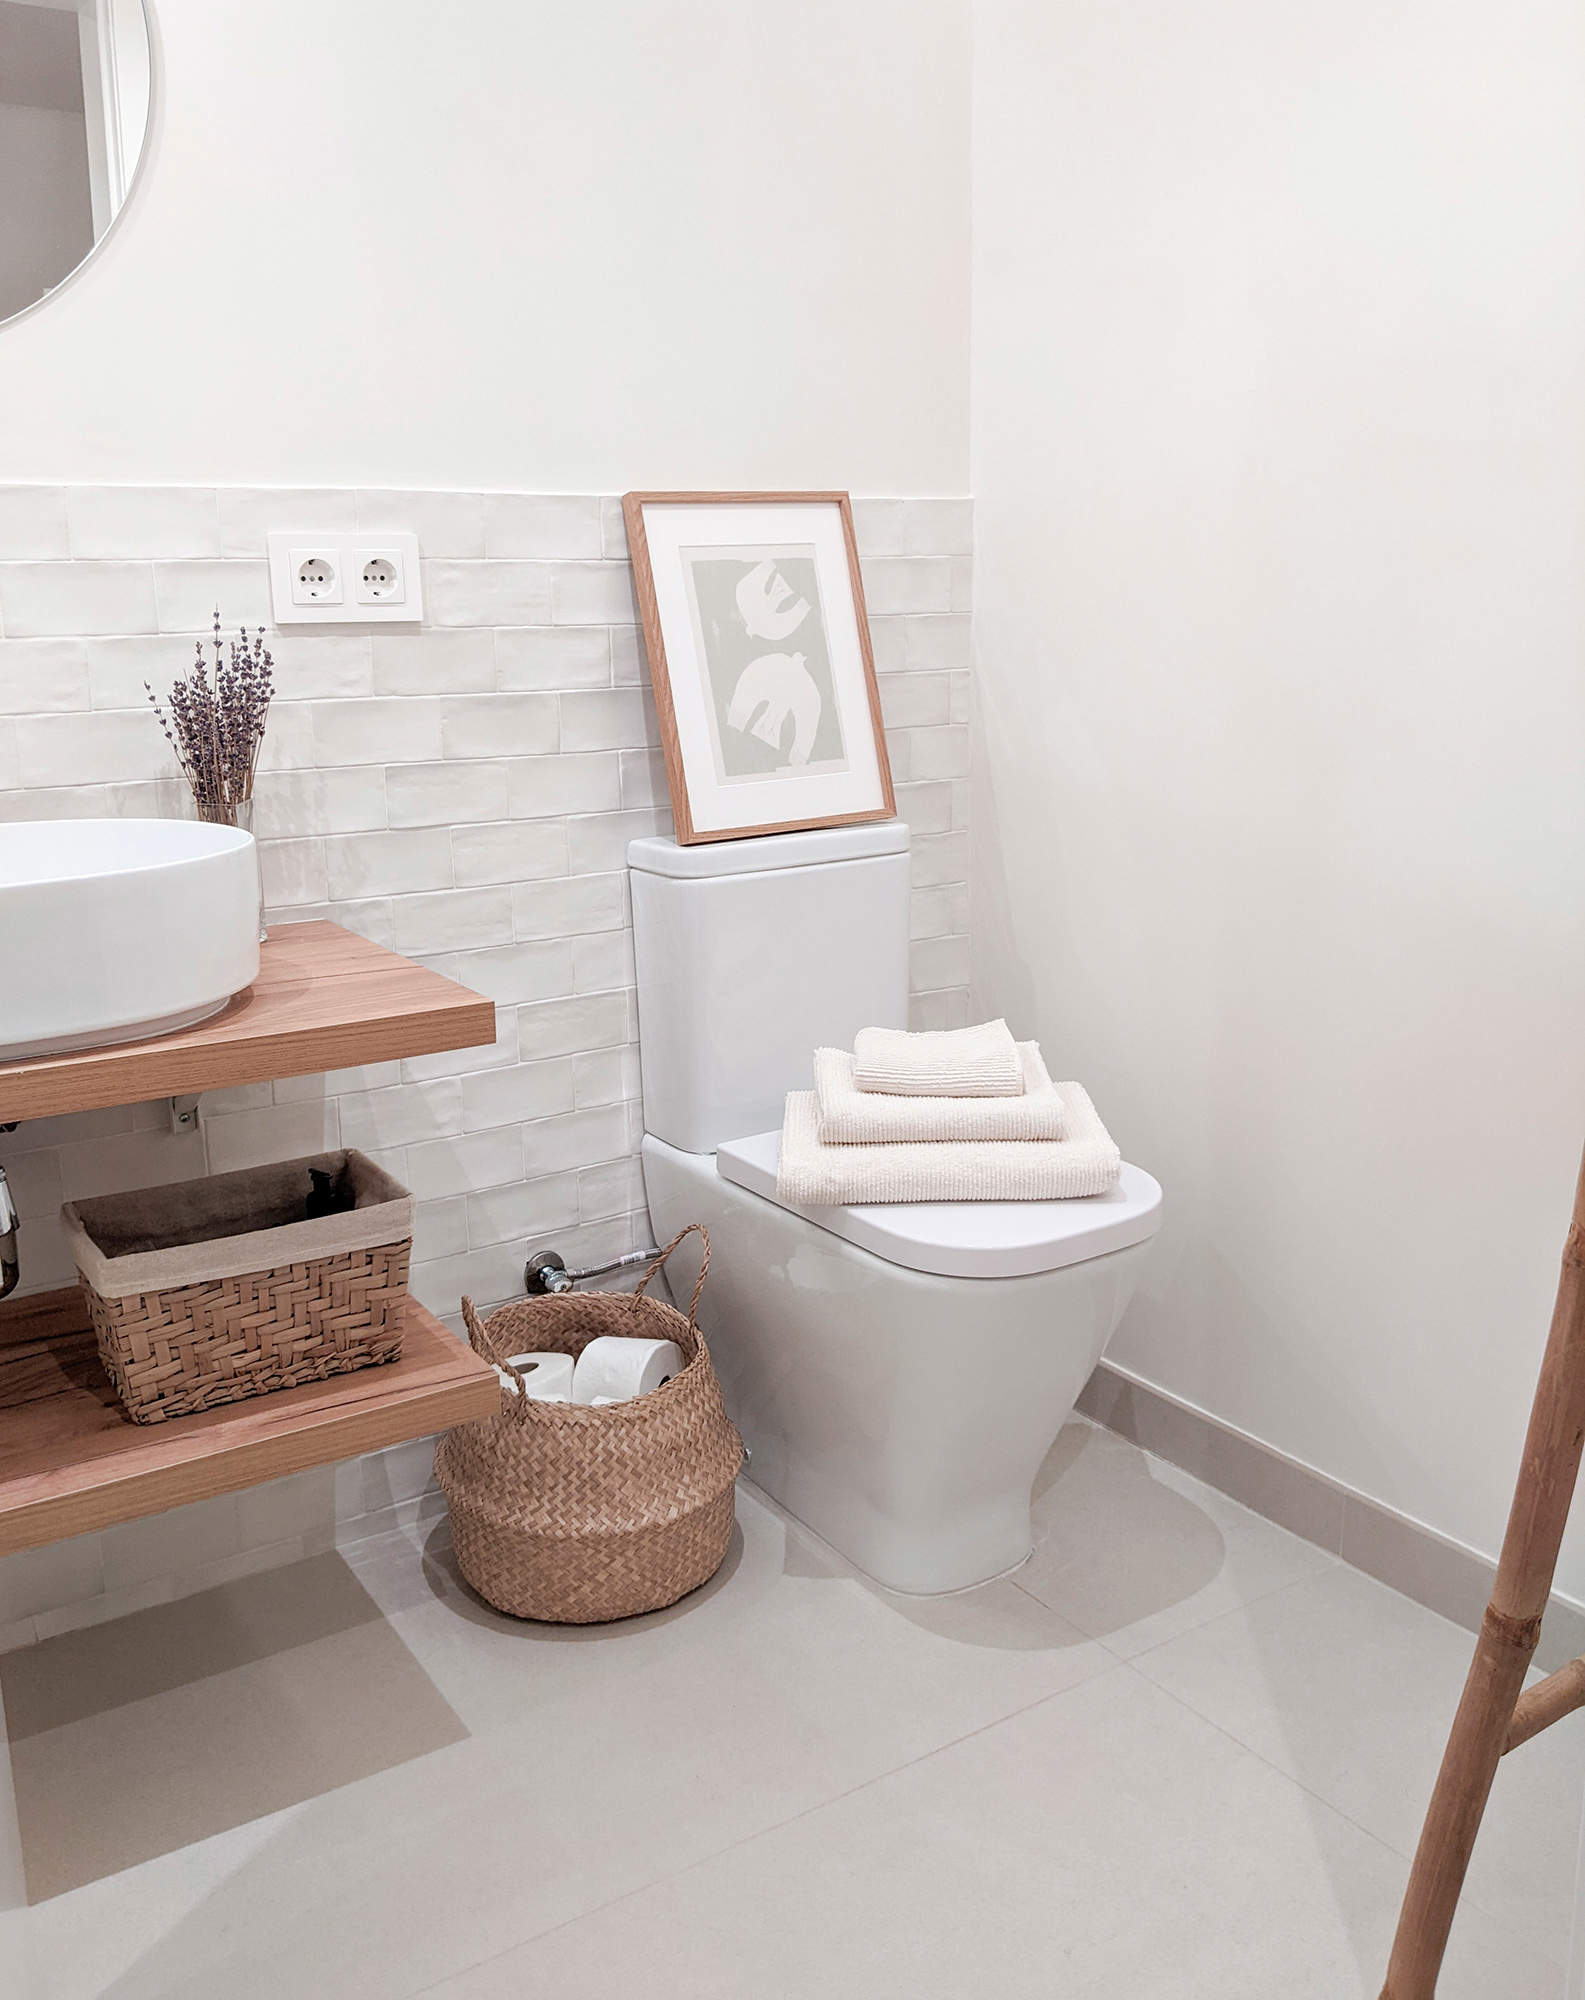 Baño moderno en blanco y madera en casa de la instagramer @_new_niu_